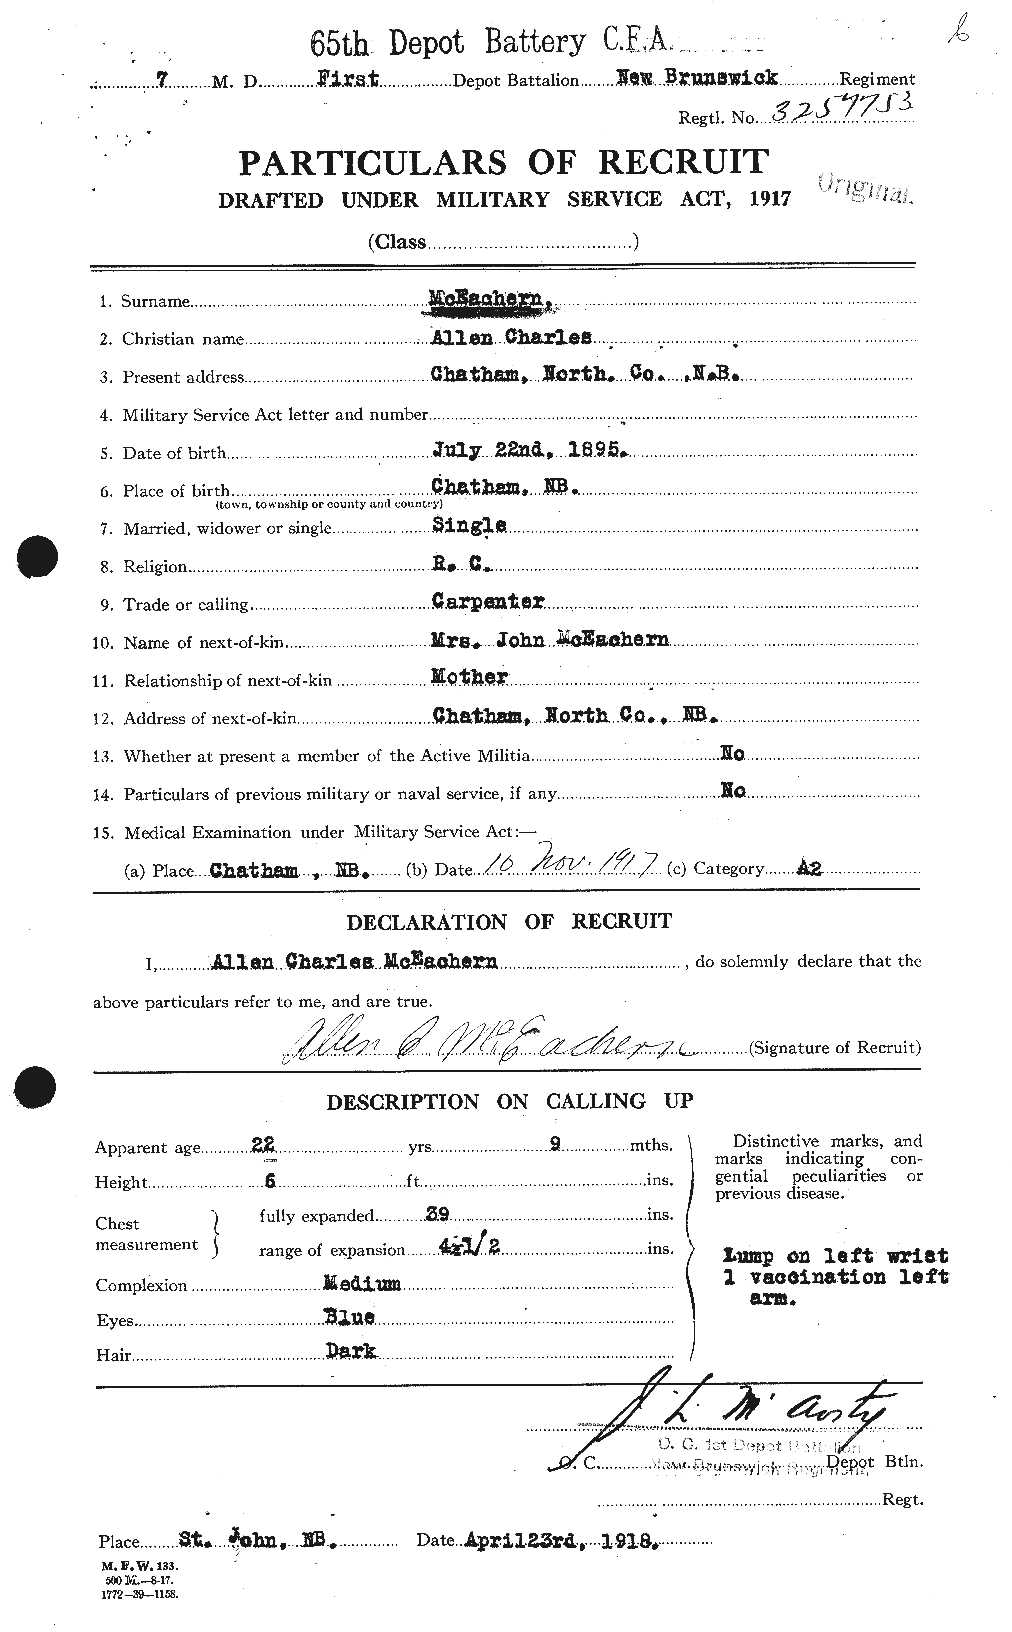 Dossiers du Personnel de la Première Guerre mondiale - CEC 520791a